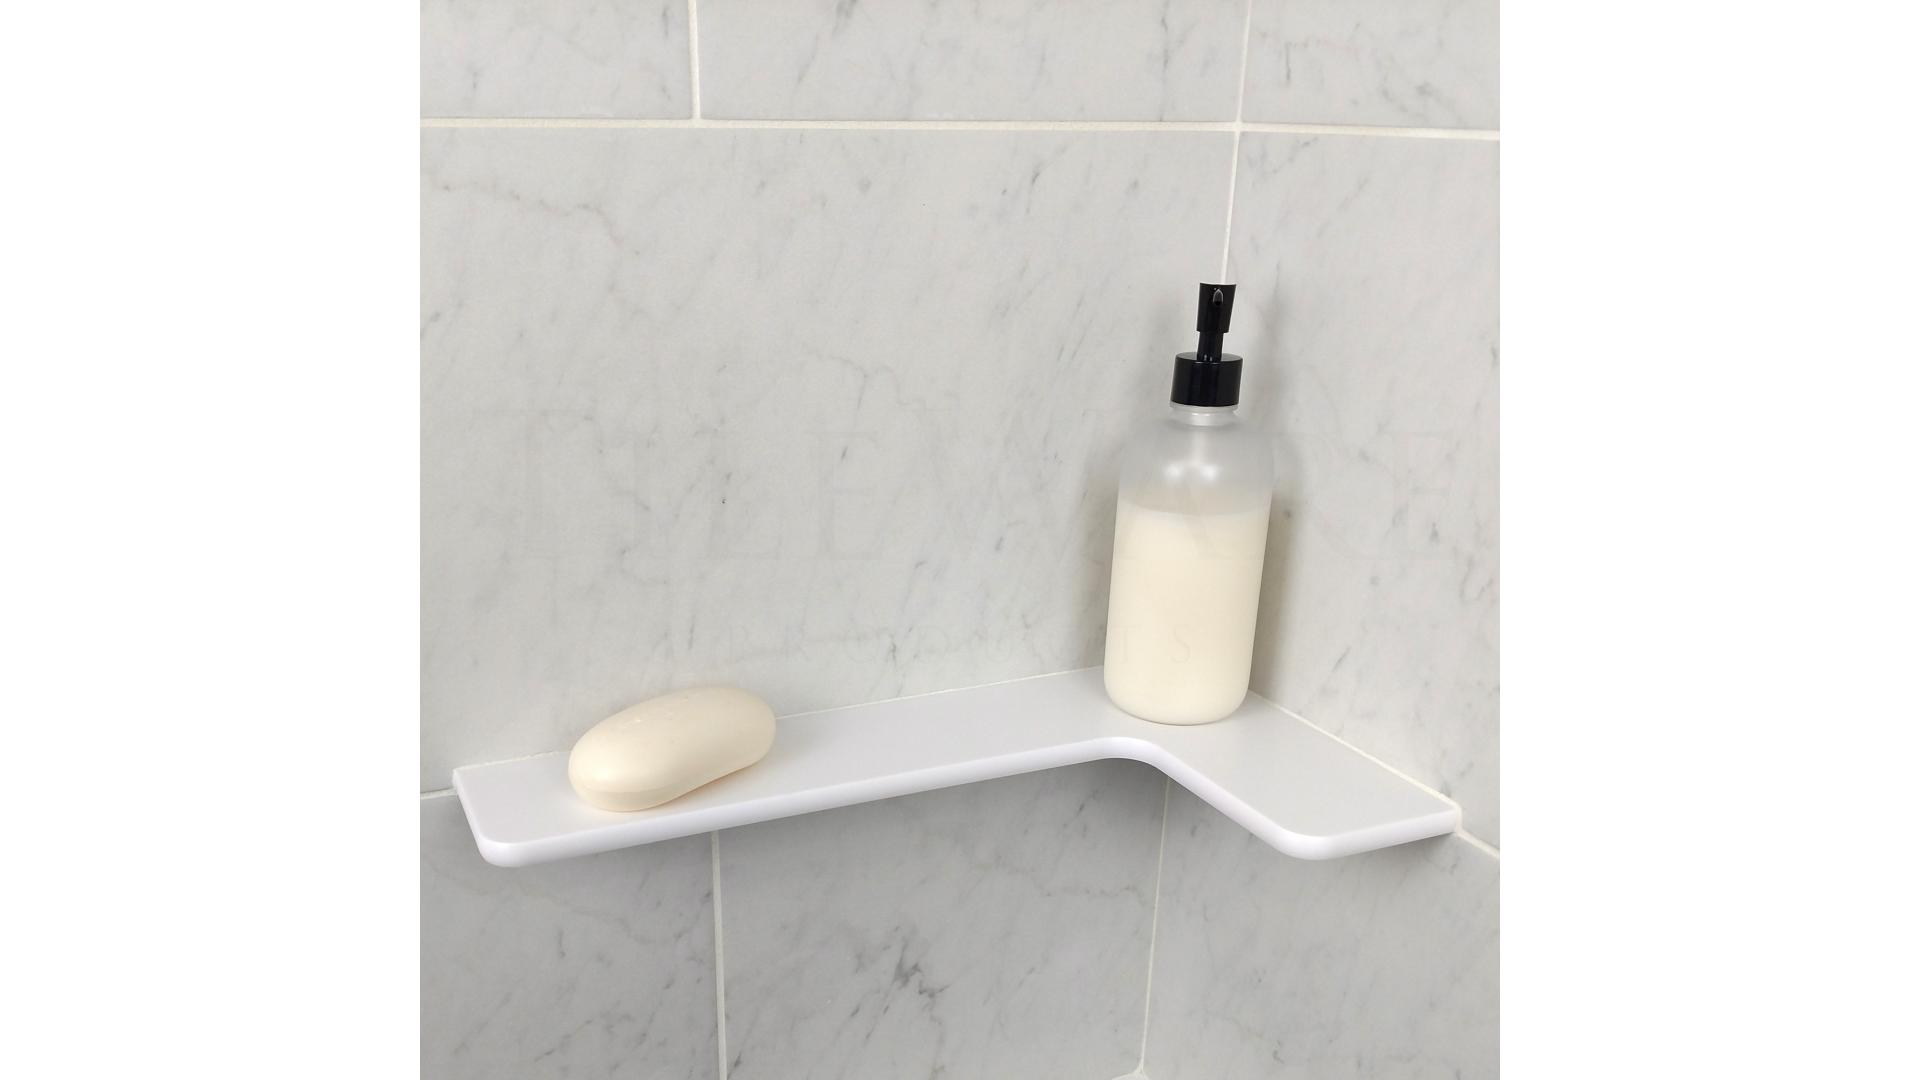 How to Install a Corner Shower Shelf (DIY)